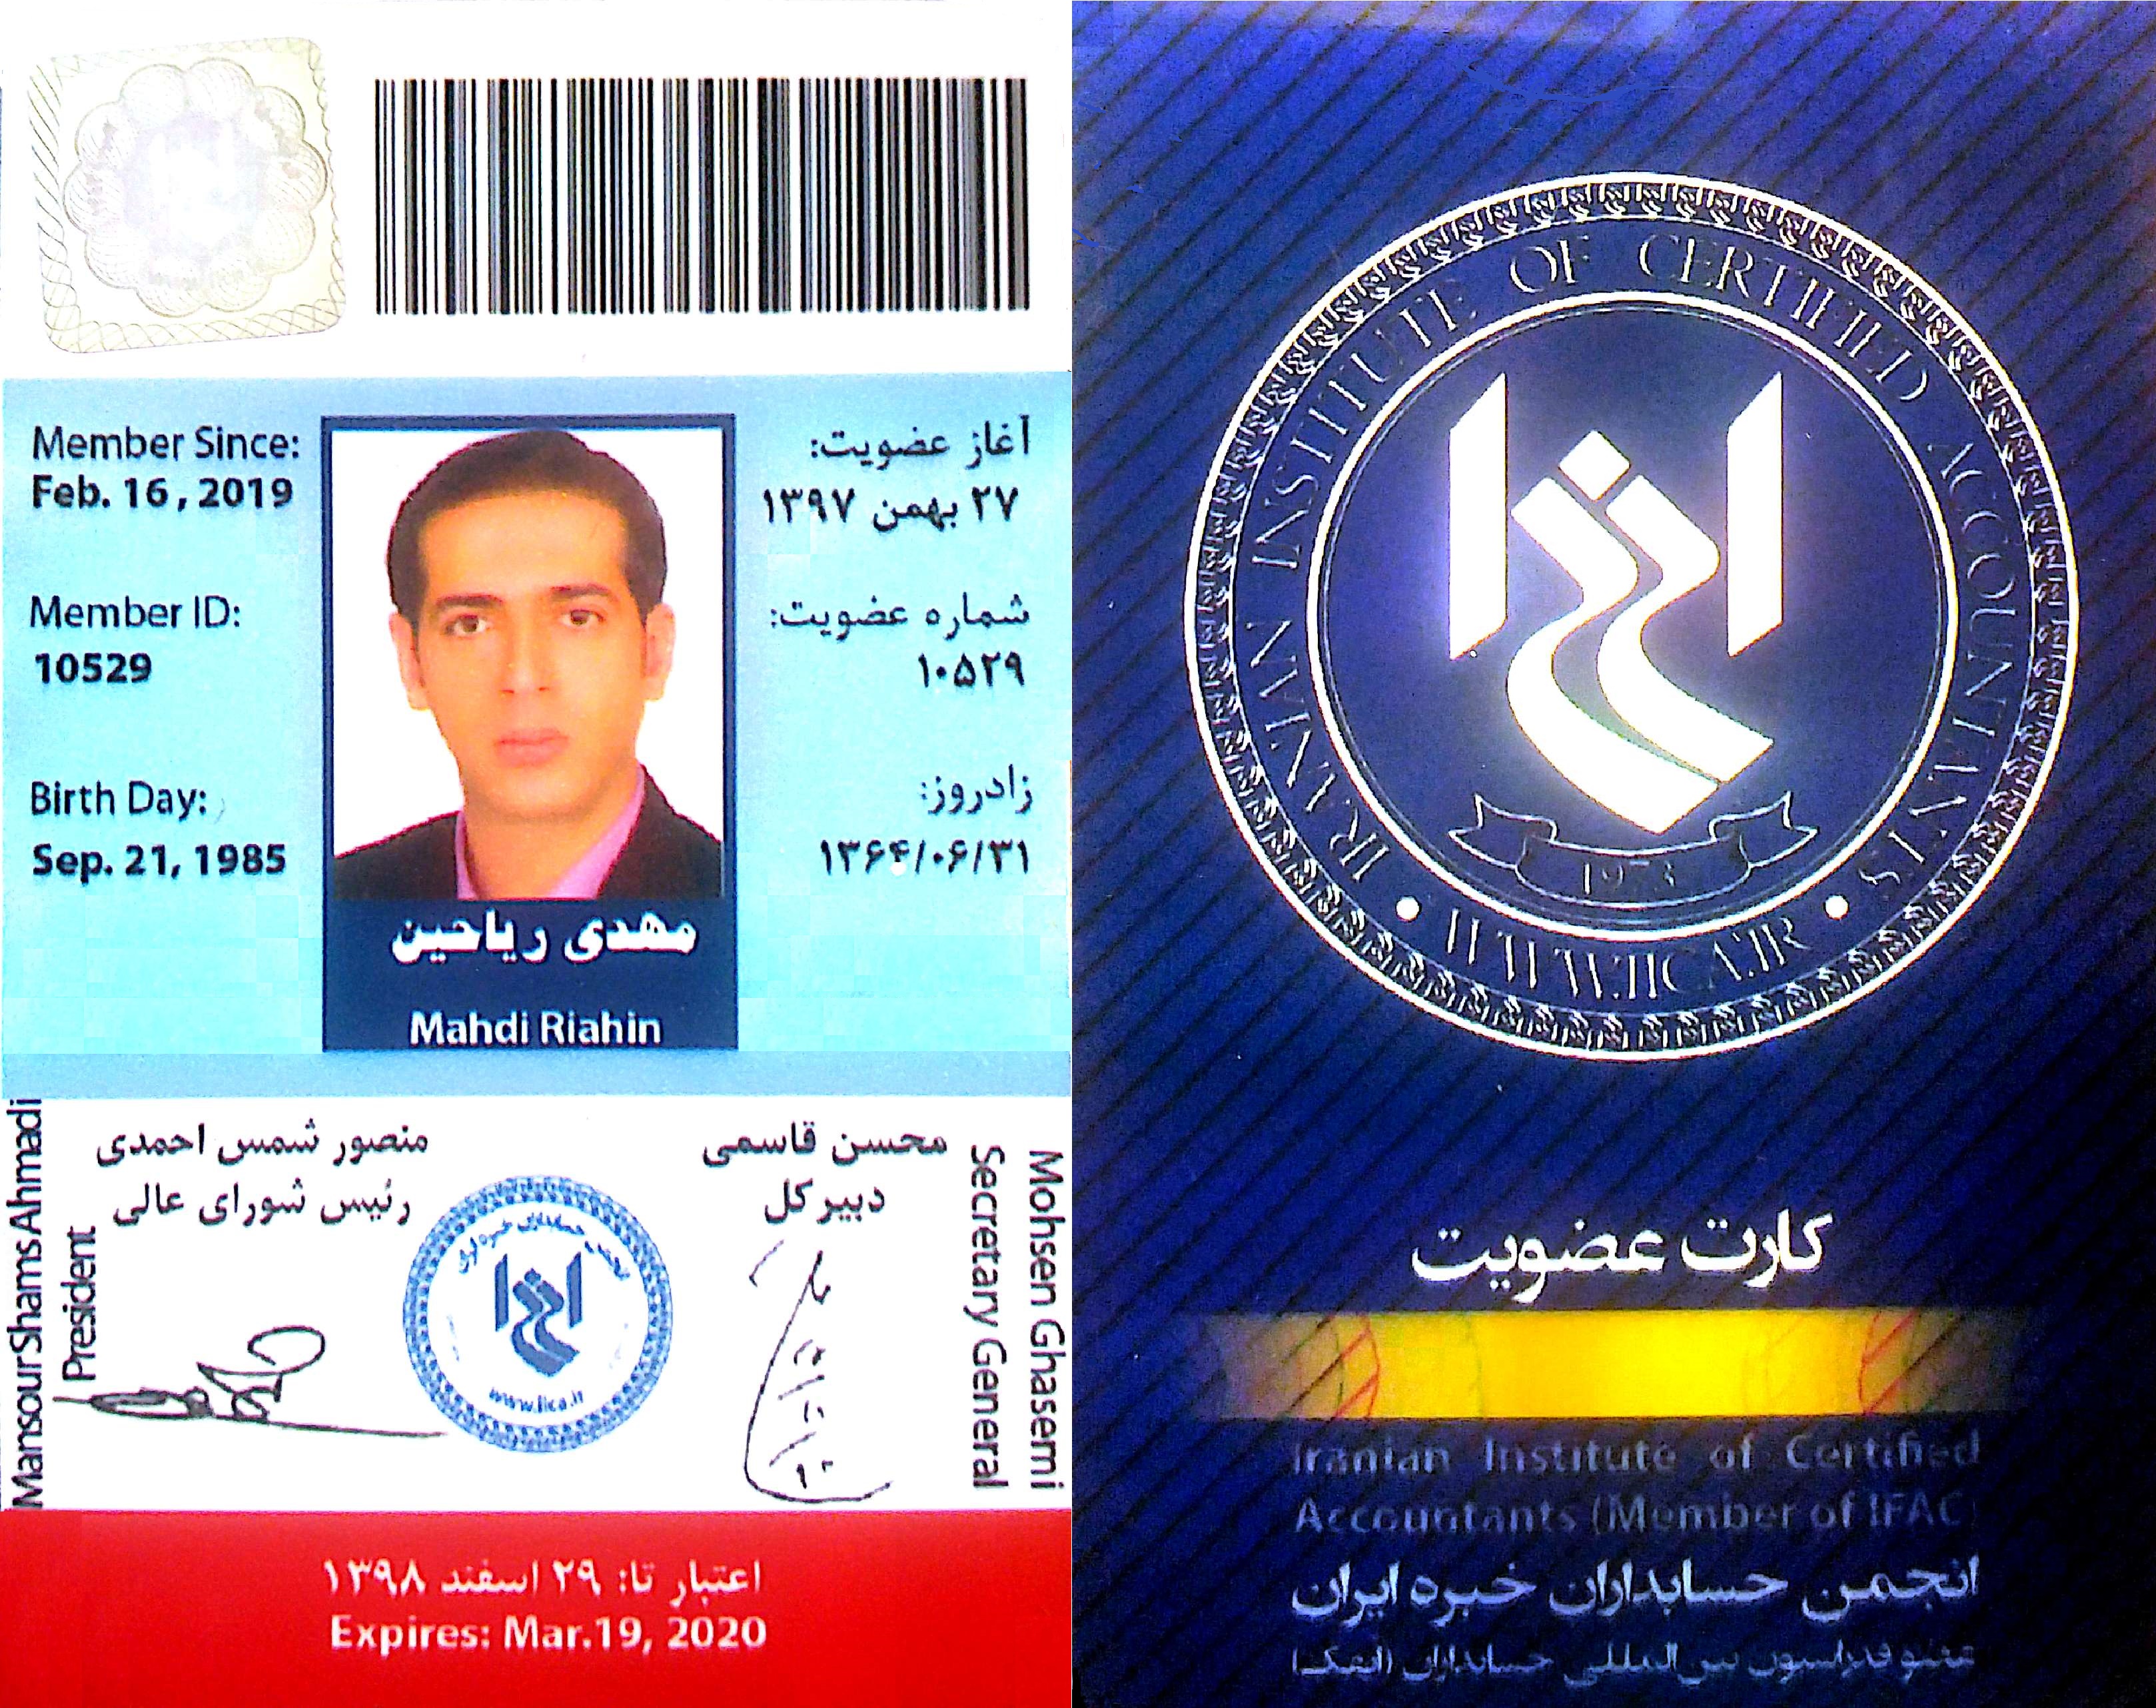 کارت عضویت انجمن حسابداران خبره ایران